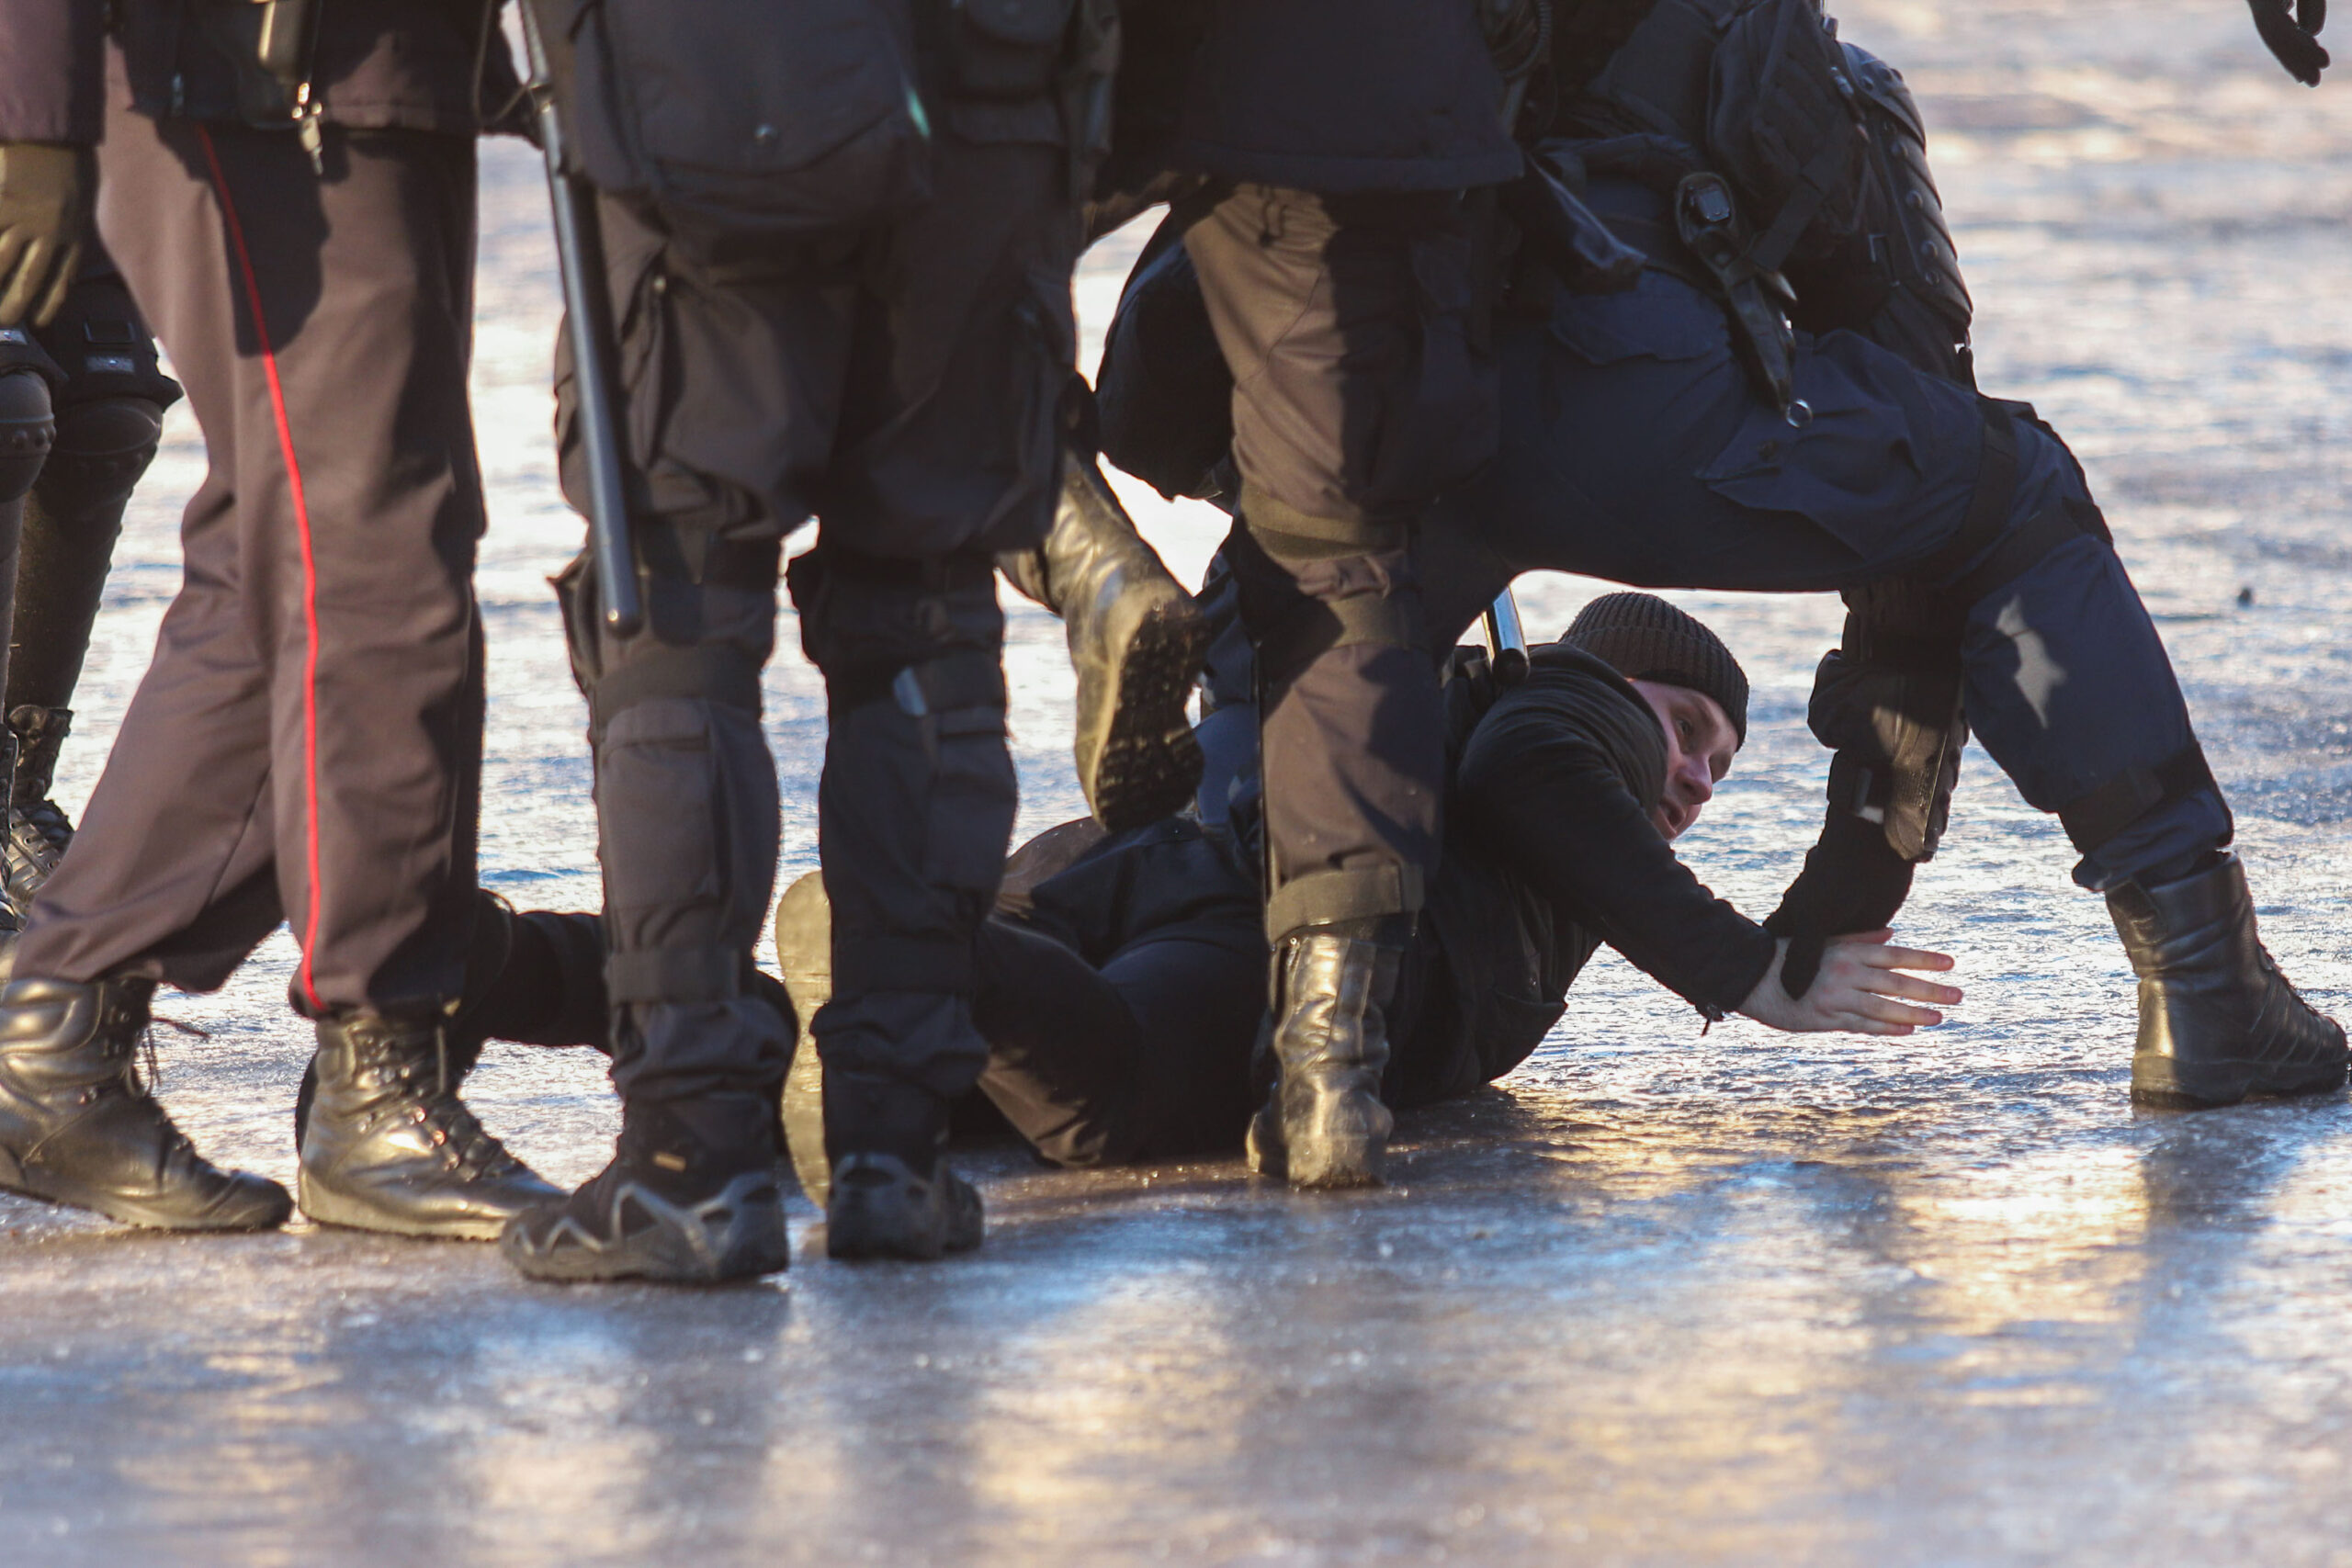 Задержание на антивоенной манифестации в Санкт-Петербурге. 6 марта 2022 года. Фото SOPA Images via ZUMA Press Wire/Scanpix/Leta